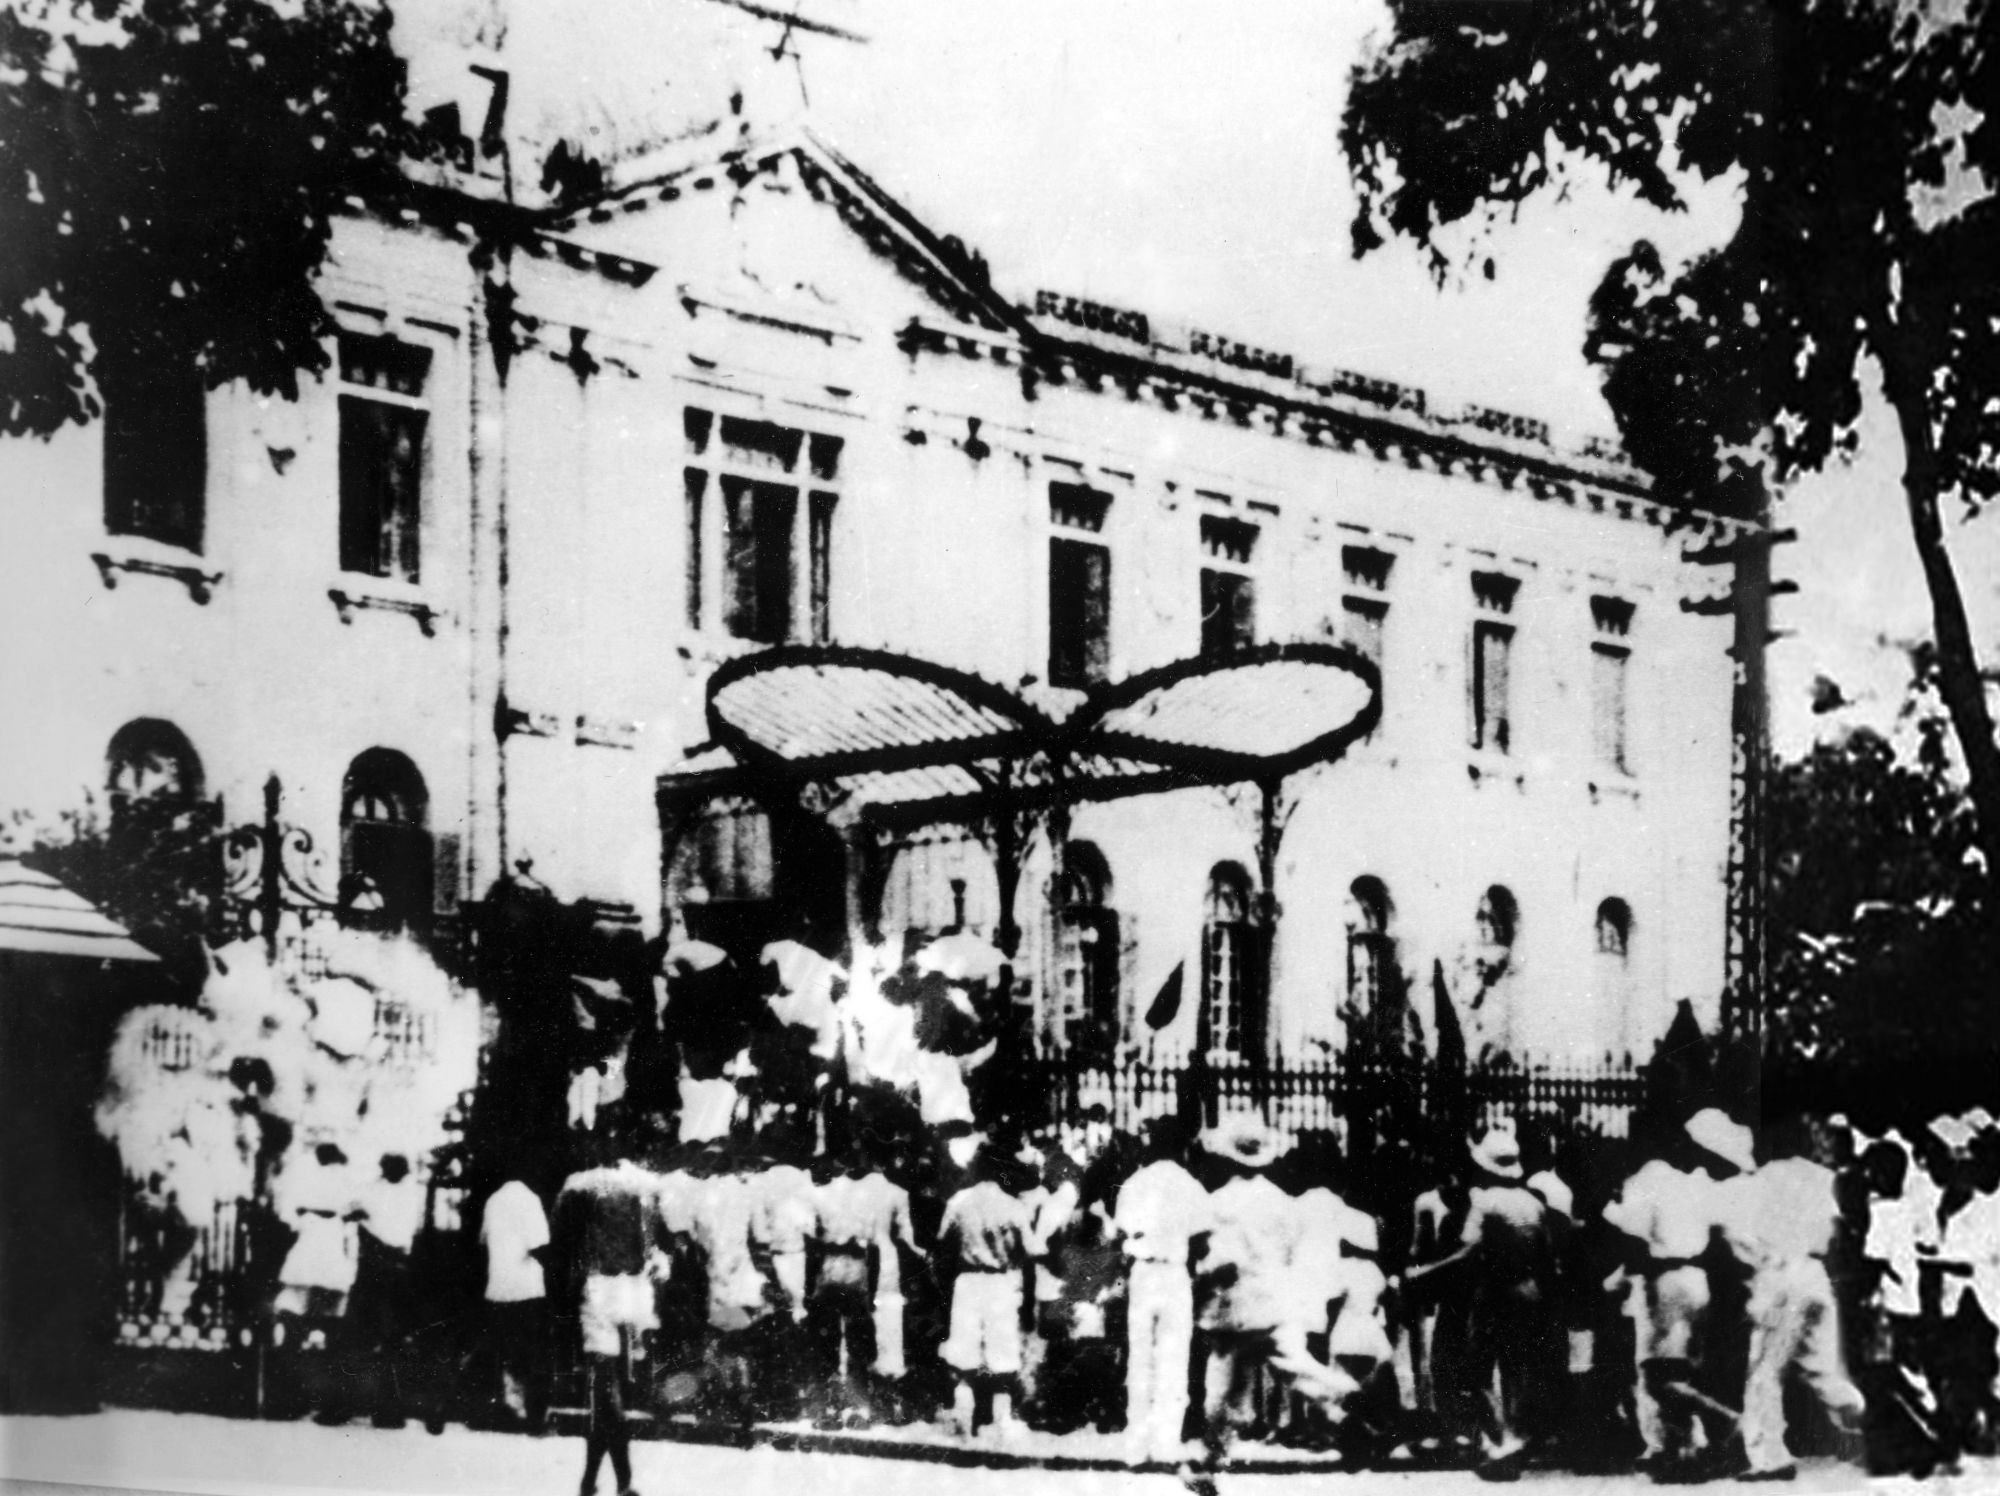 El pueblo capitalino tomó la sede del gobierno lacayo del colonialismo francés en el norte, tras el mitín en la plaza de la Ópera de Hanoi el 19 de agosto de 1945. El éxito de la Revolución de Agosto dio paso a la proclamación de la independencia de Vietnam. (Fuente: VNA) 